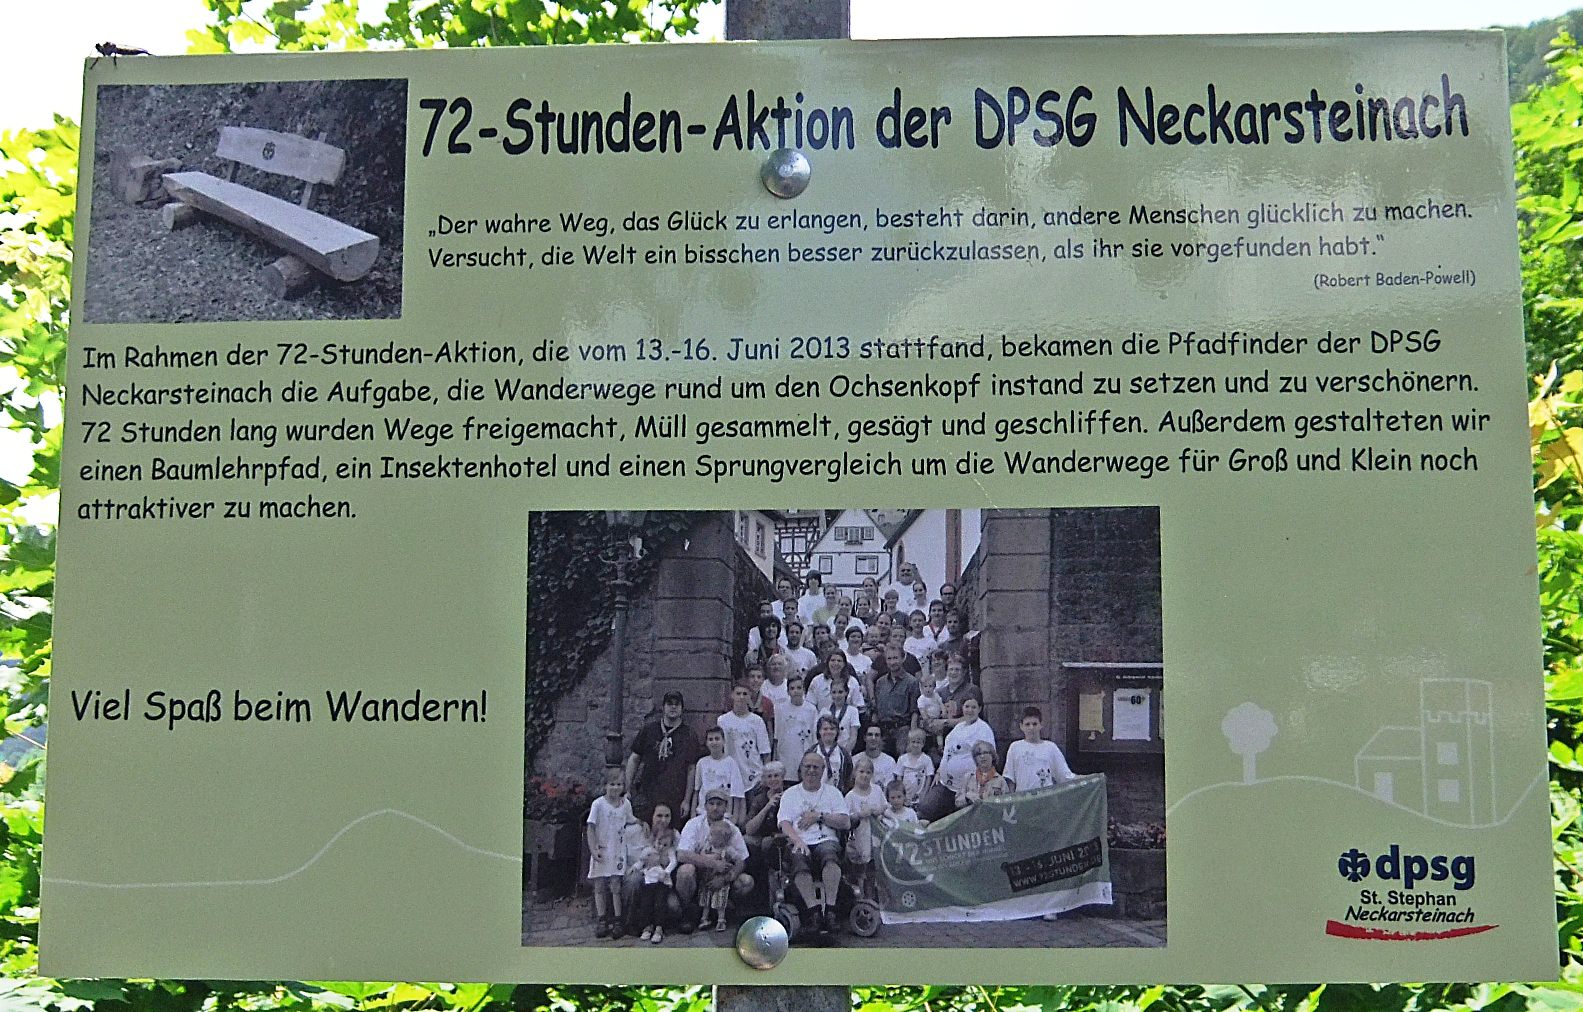 Datei:Infotafel 72-Stunden-Aktion DPSG Neckarsteinach.JPG